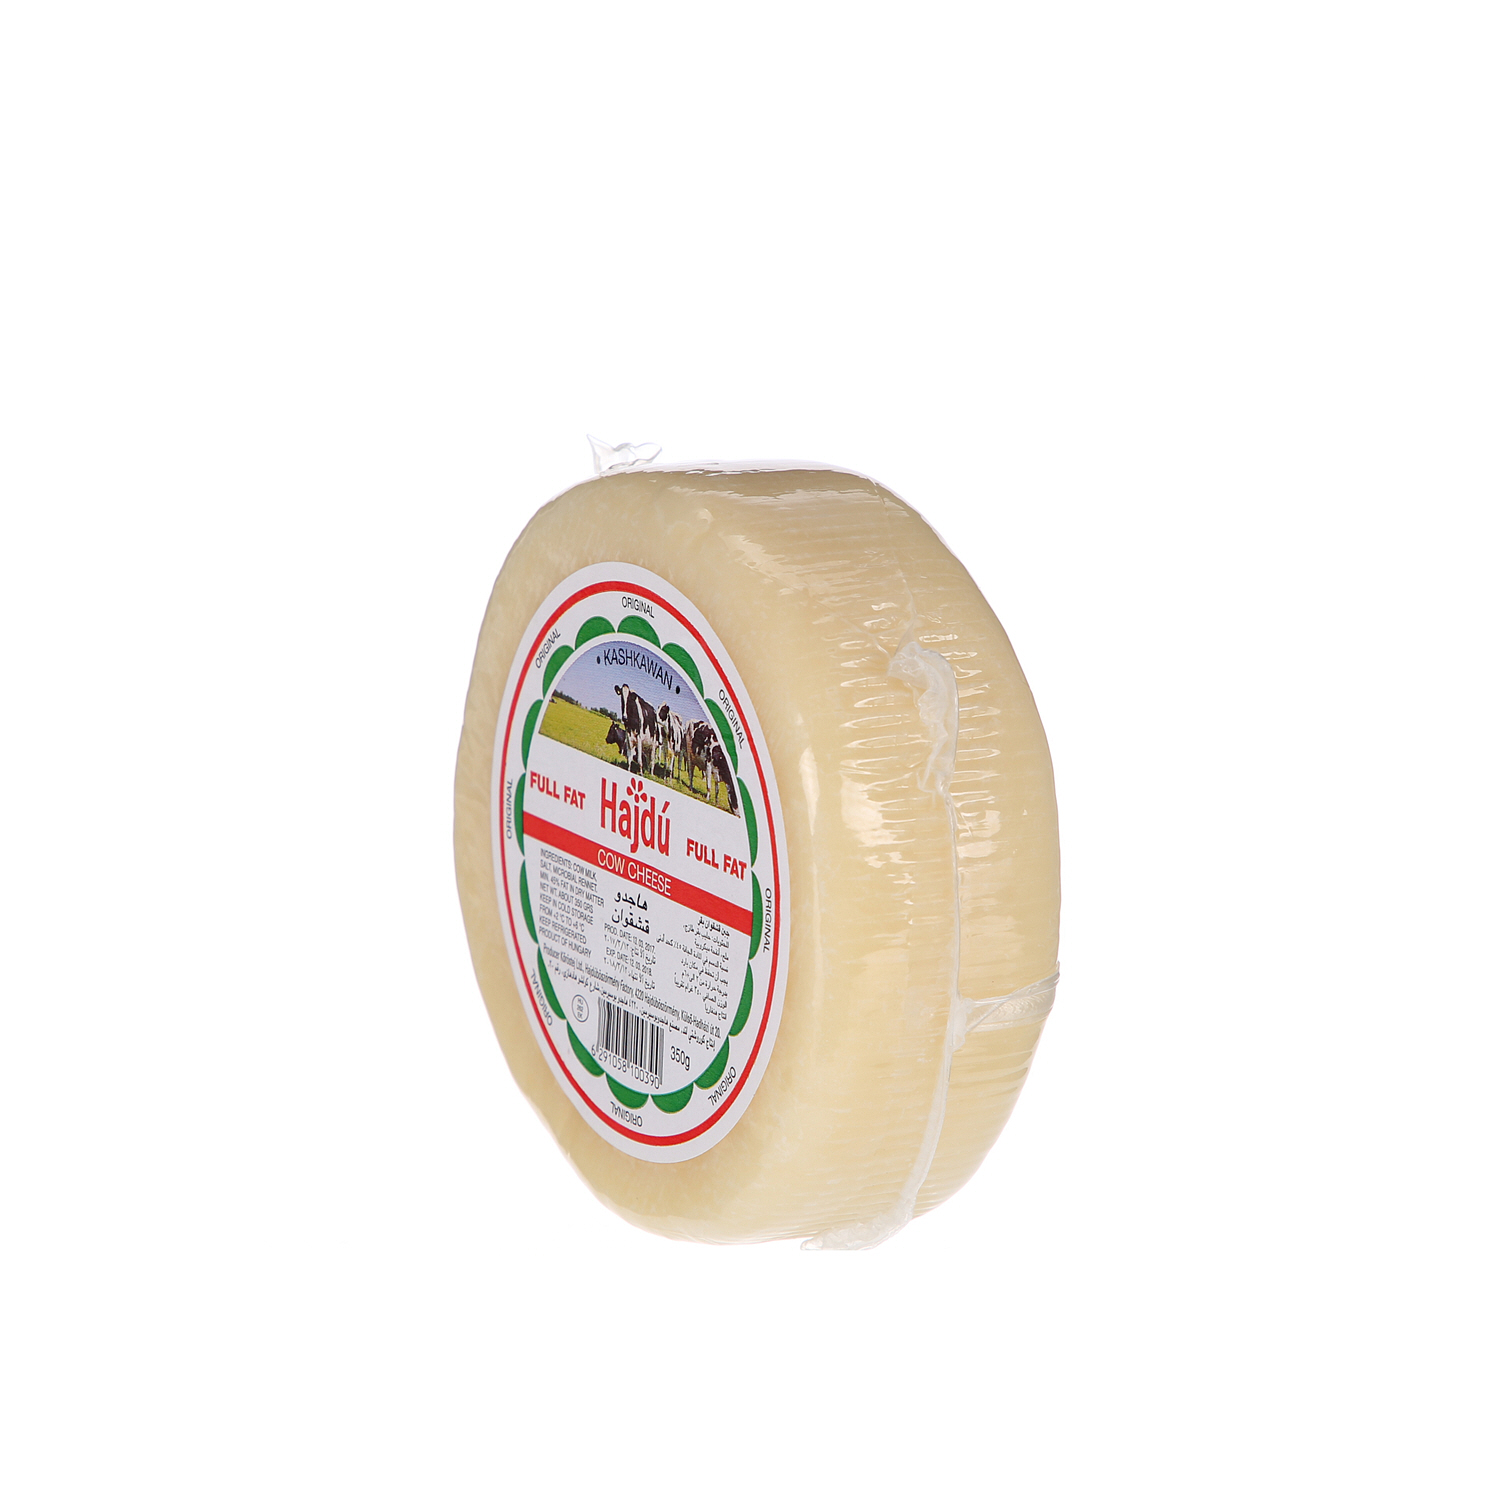 Hajdu Kashkaval Cheese 350gm